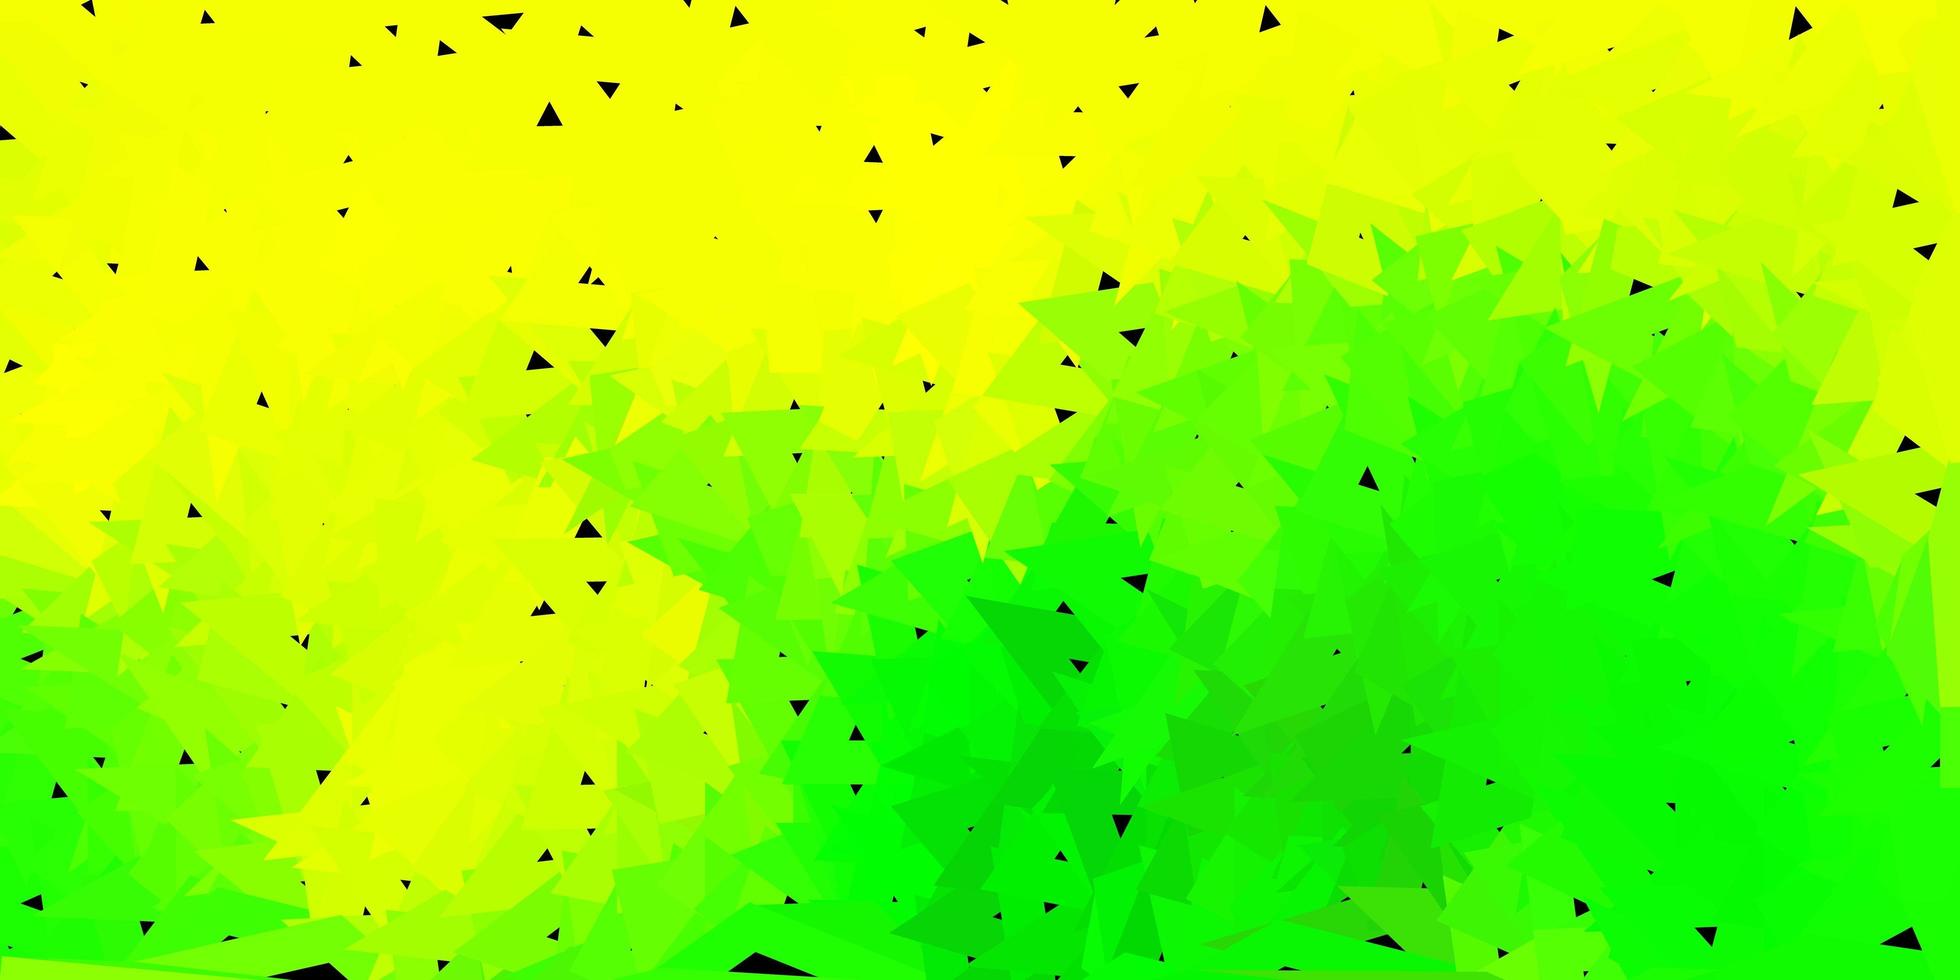 ljusgrönt, gult månghörnigt mönster. vektor